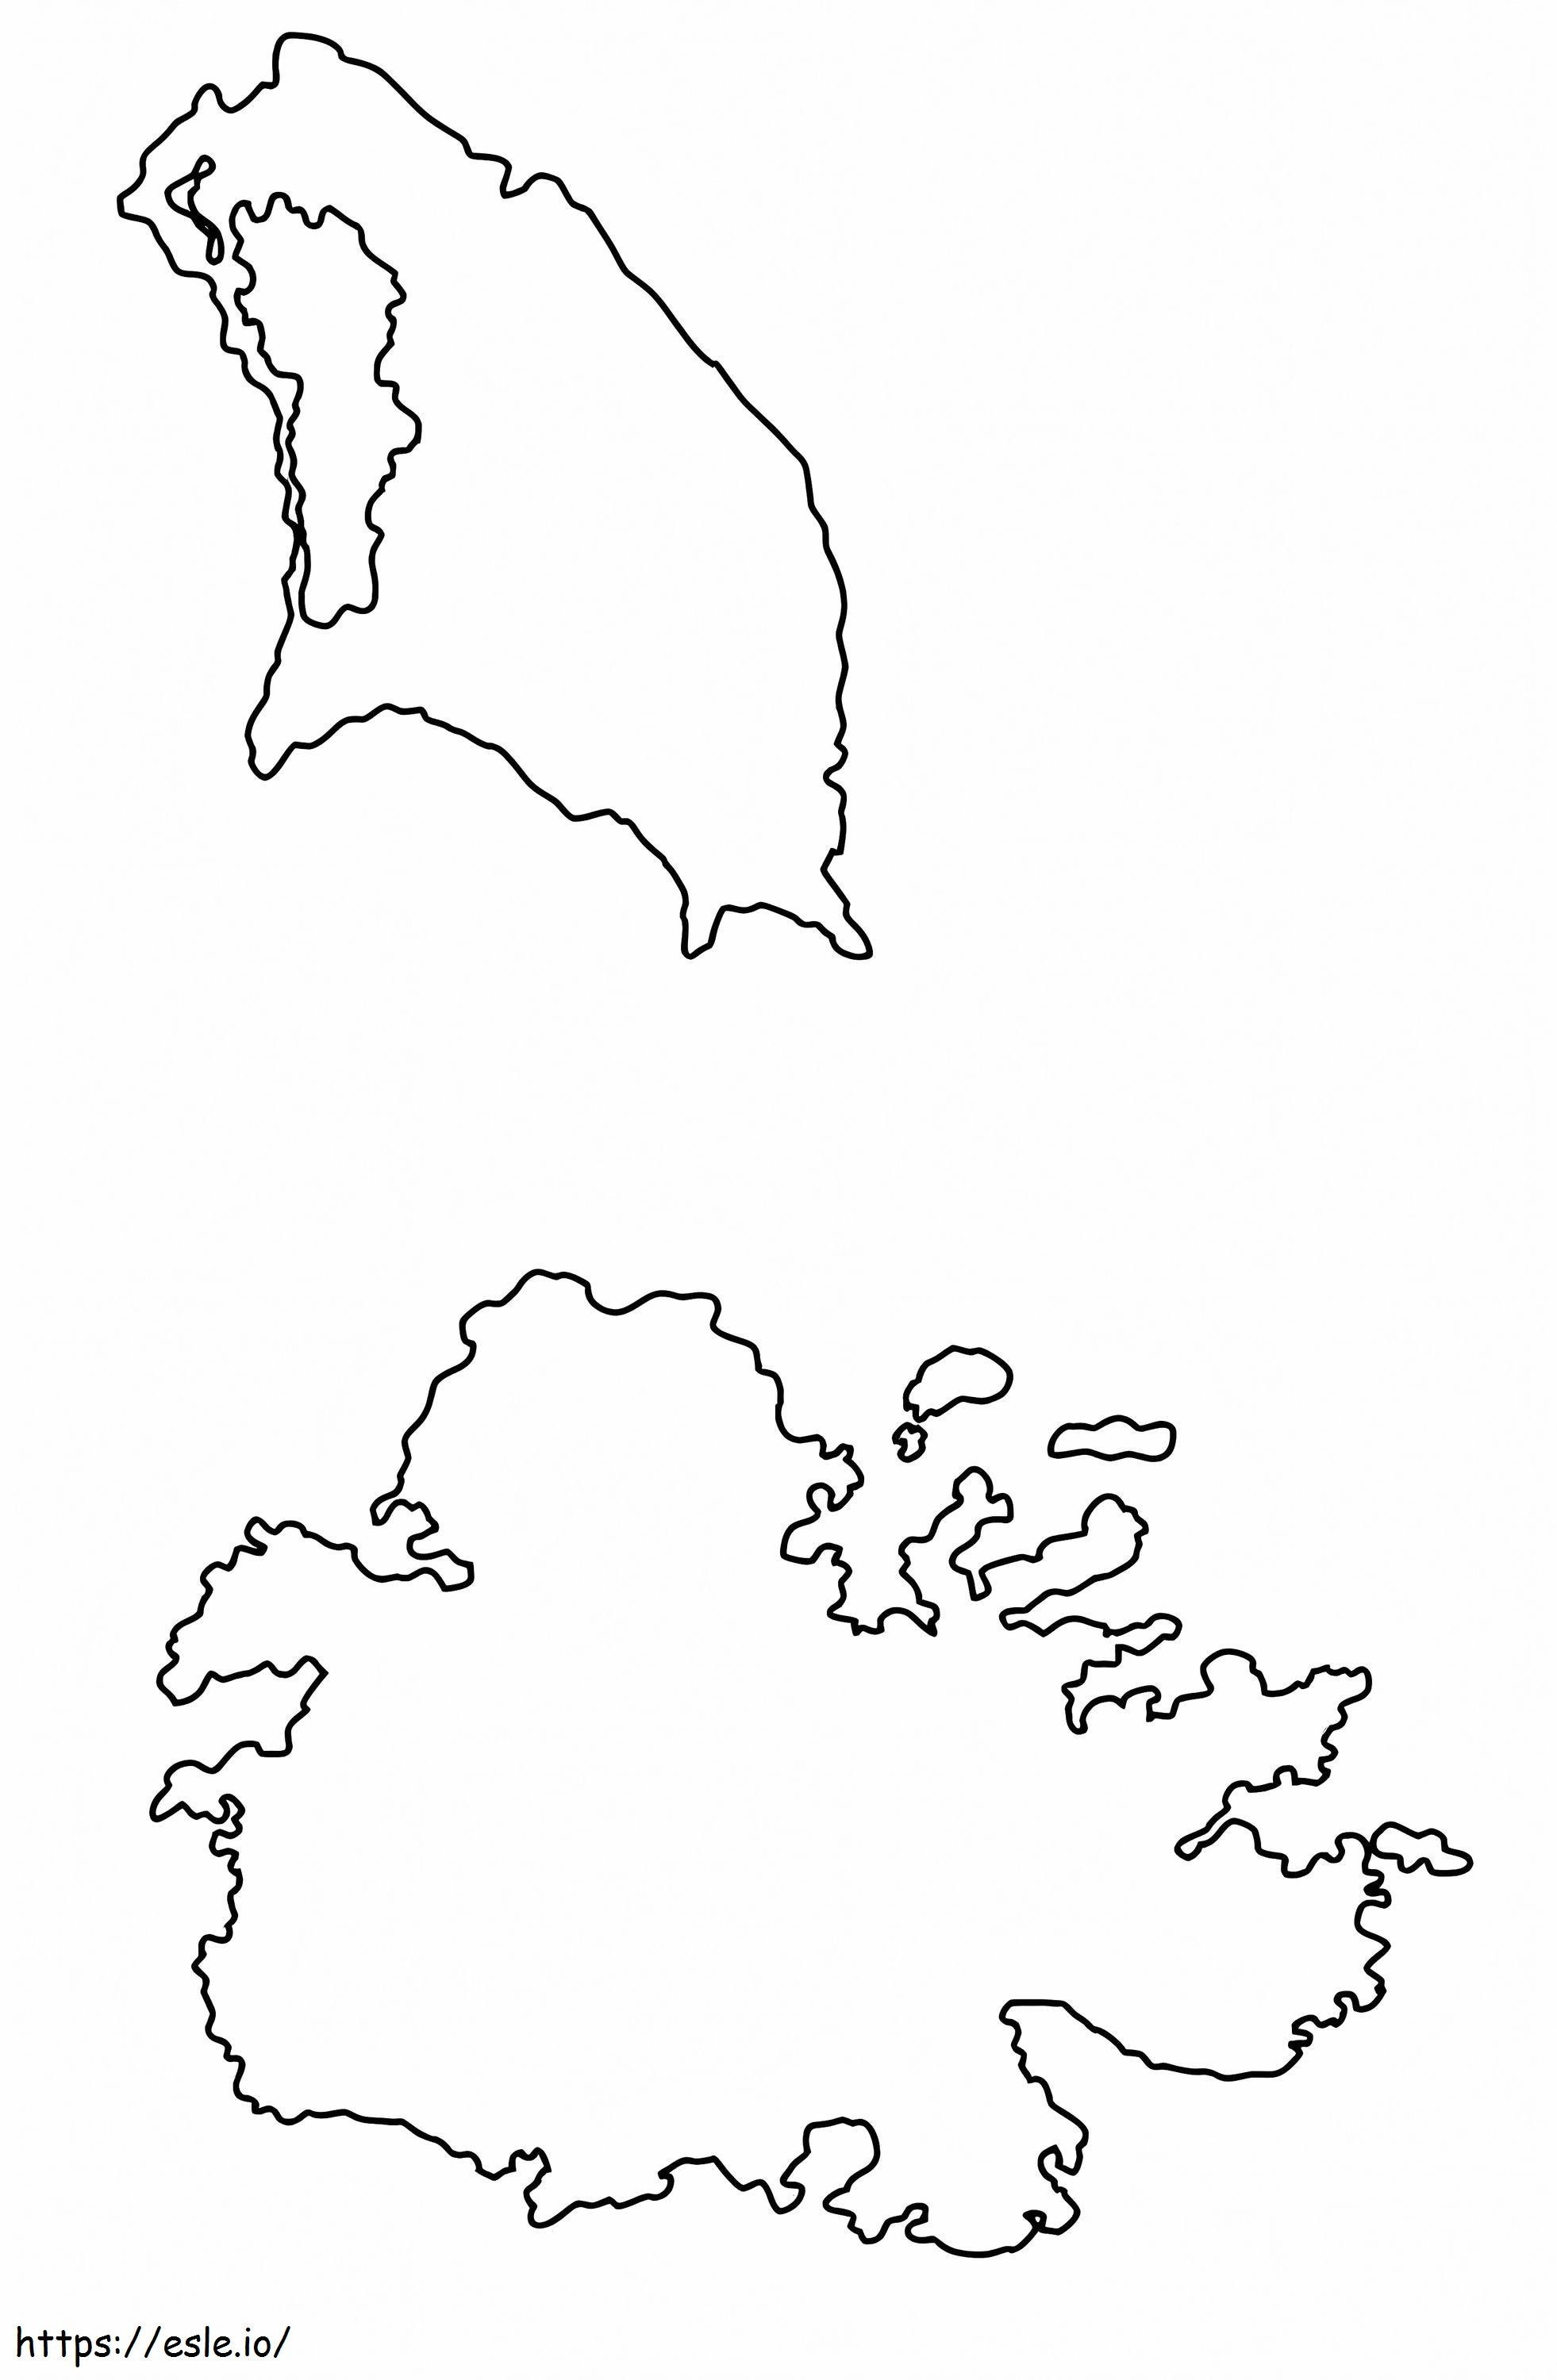 Antigua és Barbuda körvonalas térképe kifestő